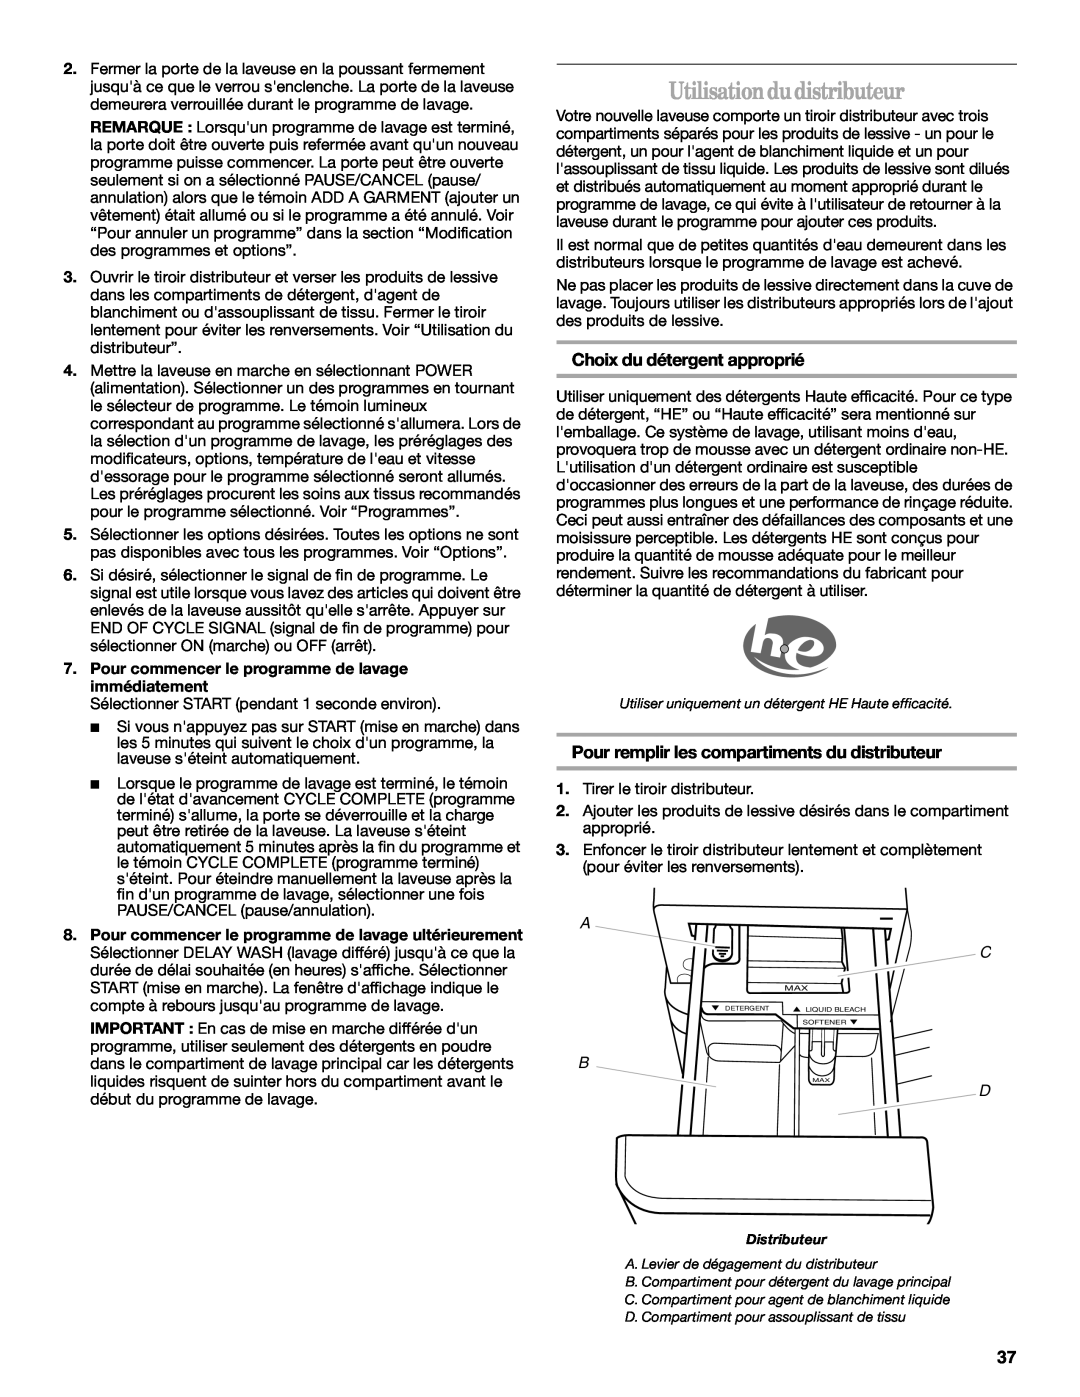 Whirlpool W10117768A manual Utilisationdudistributeur, Choix du détergent approprié 